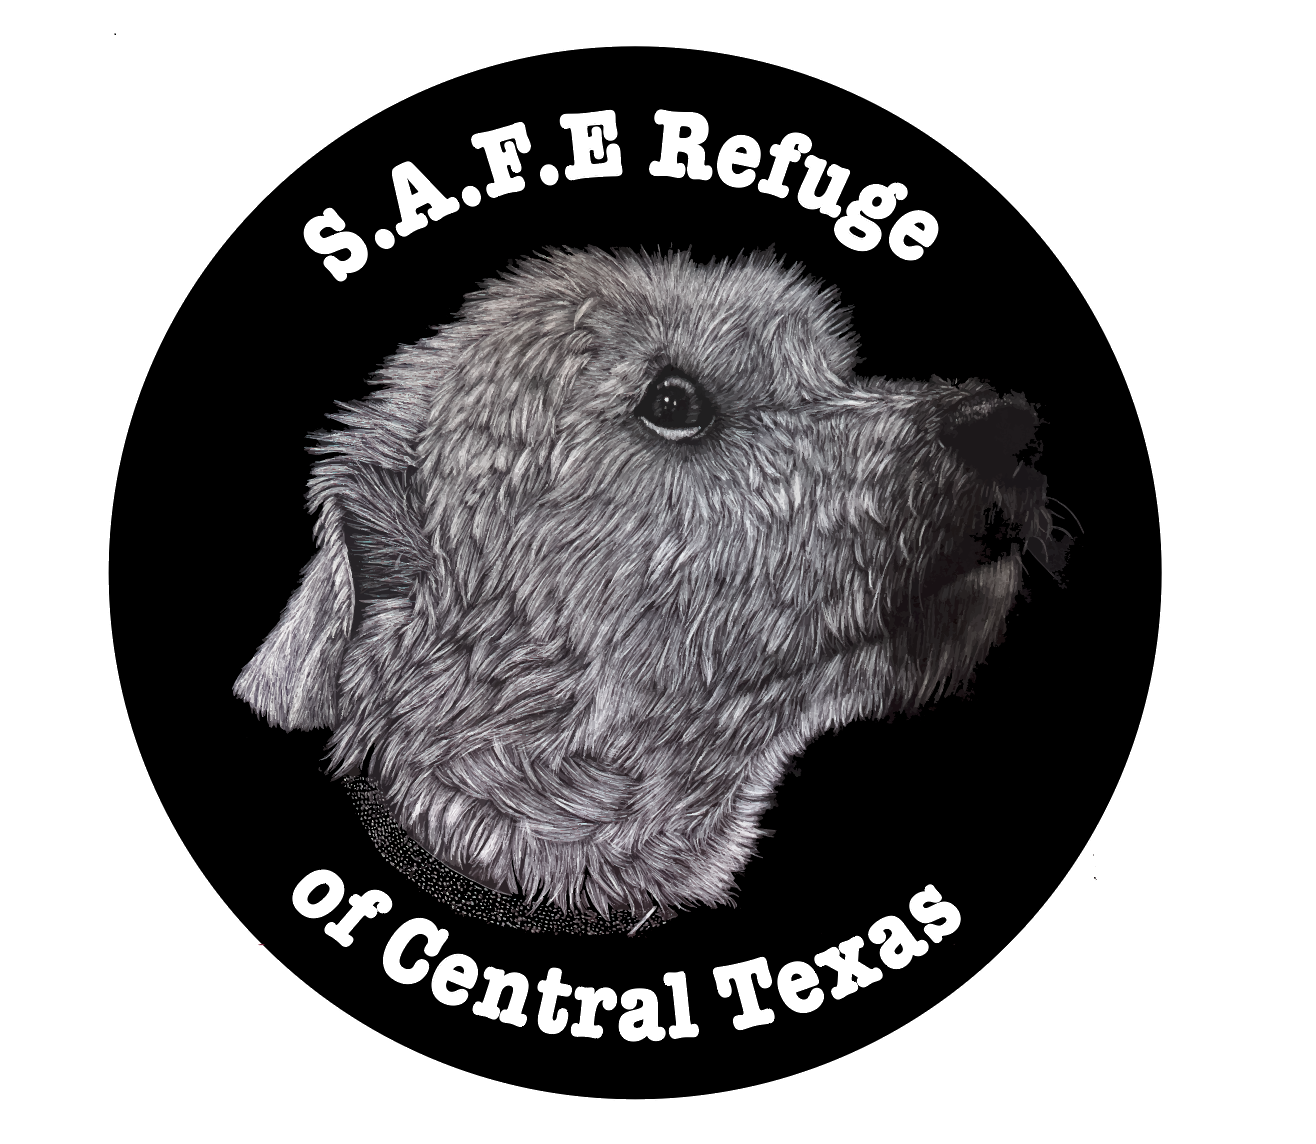 Safe Refuge of Central Texas logo